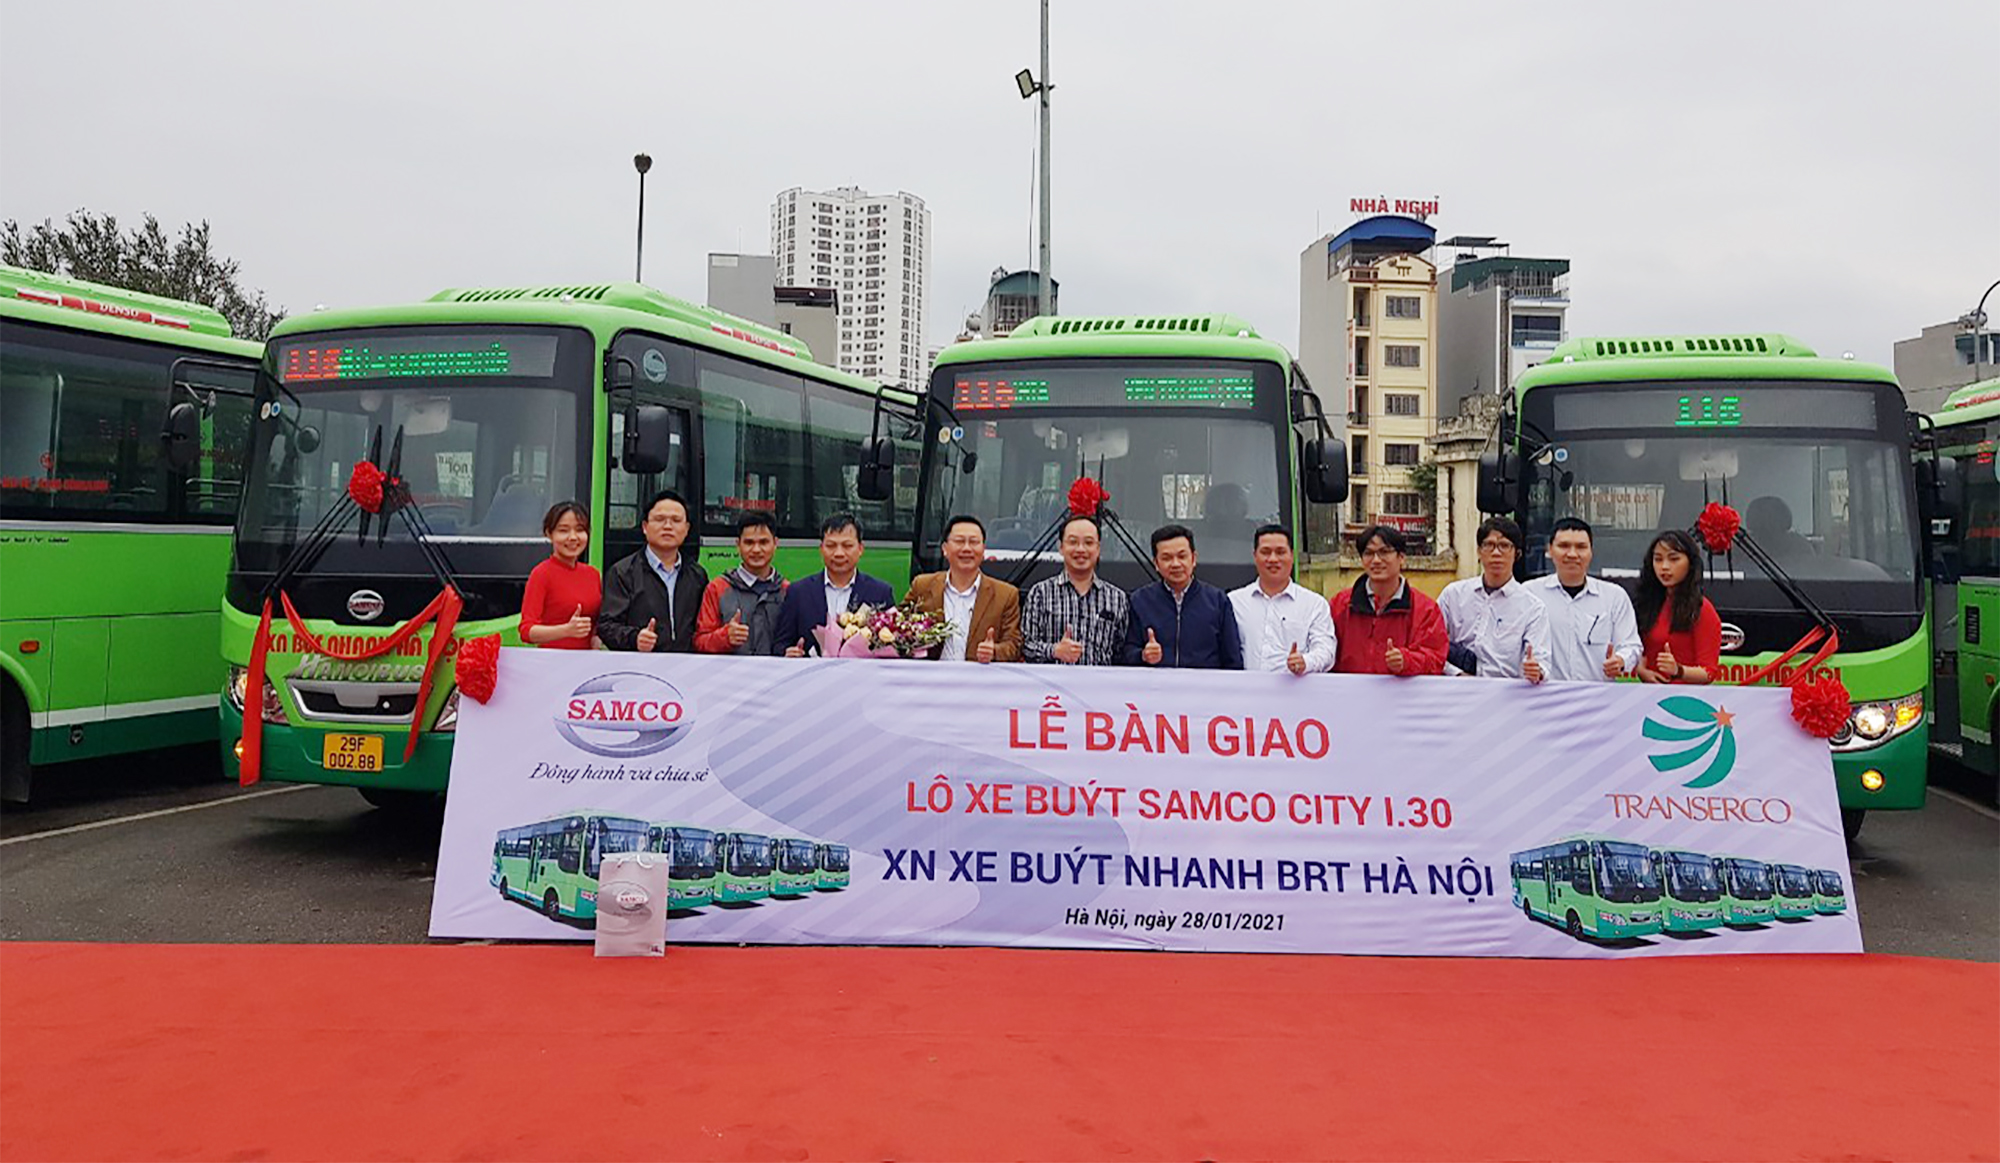 Samco Hà Nội ban giao lô xe buýt CITY I.30